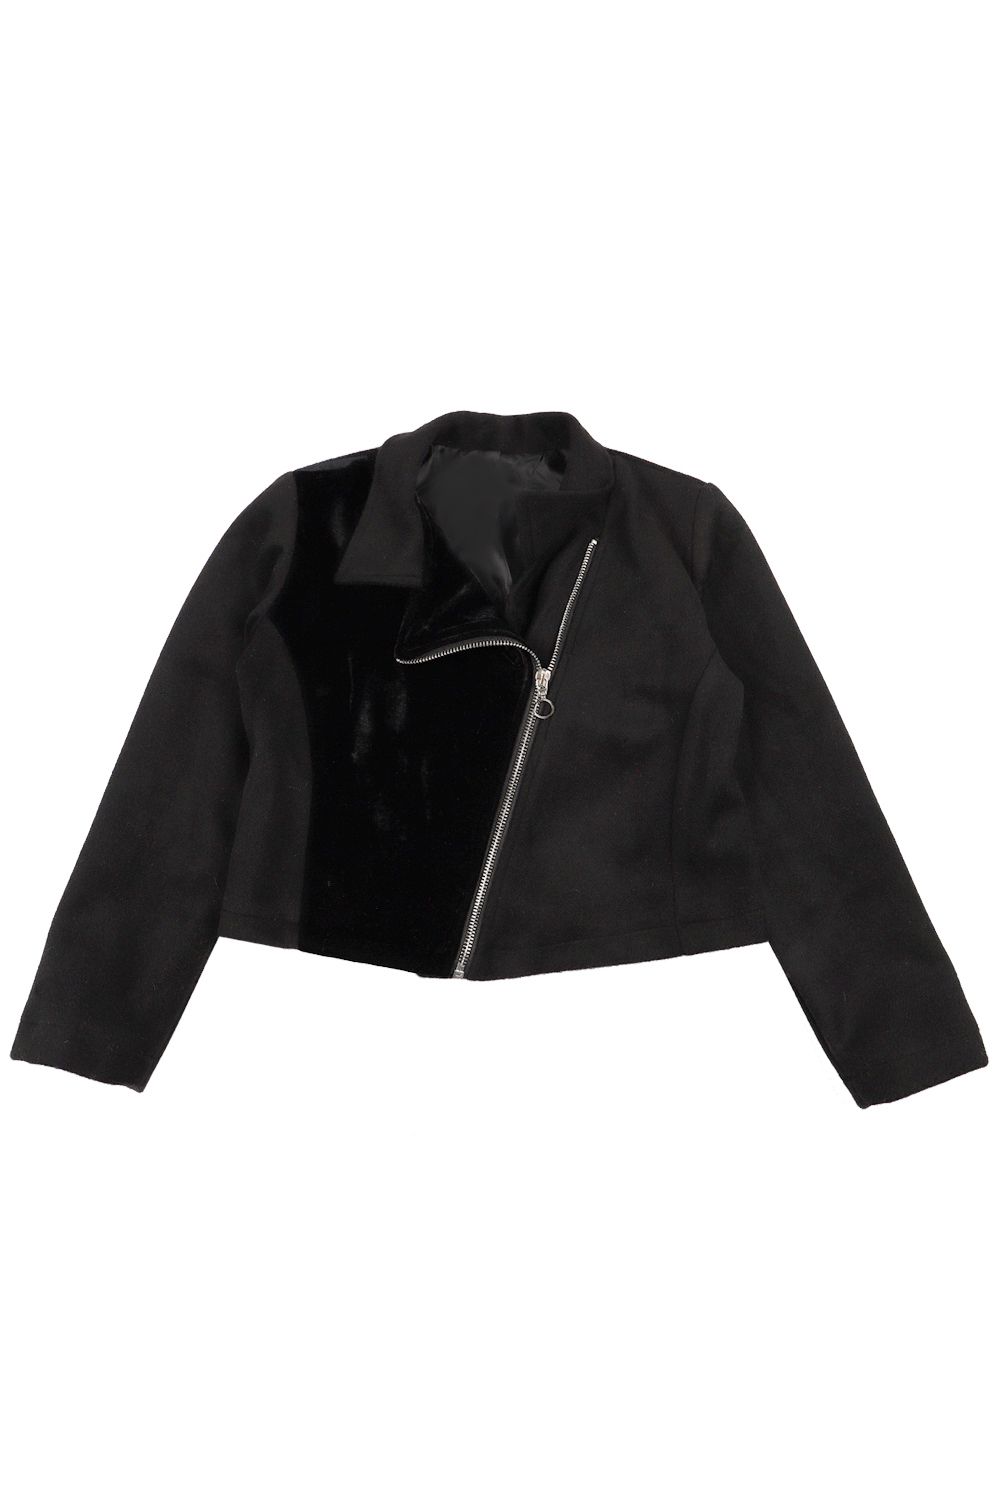 Куртка Gaialuna, размер 134, цвет черный G1925 - фото 1